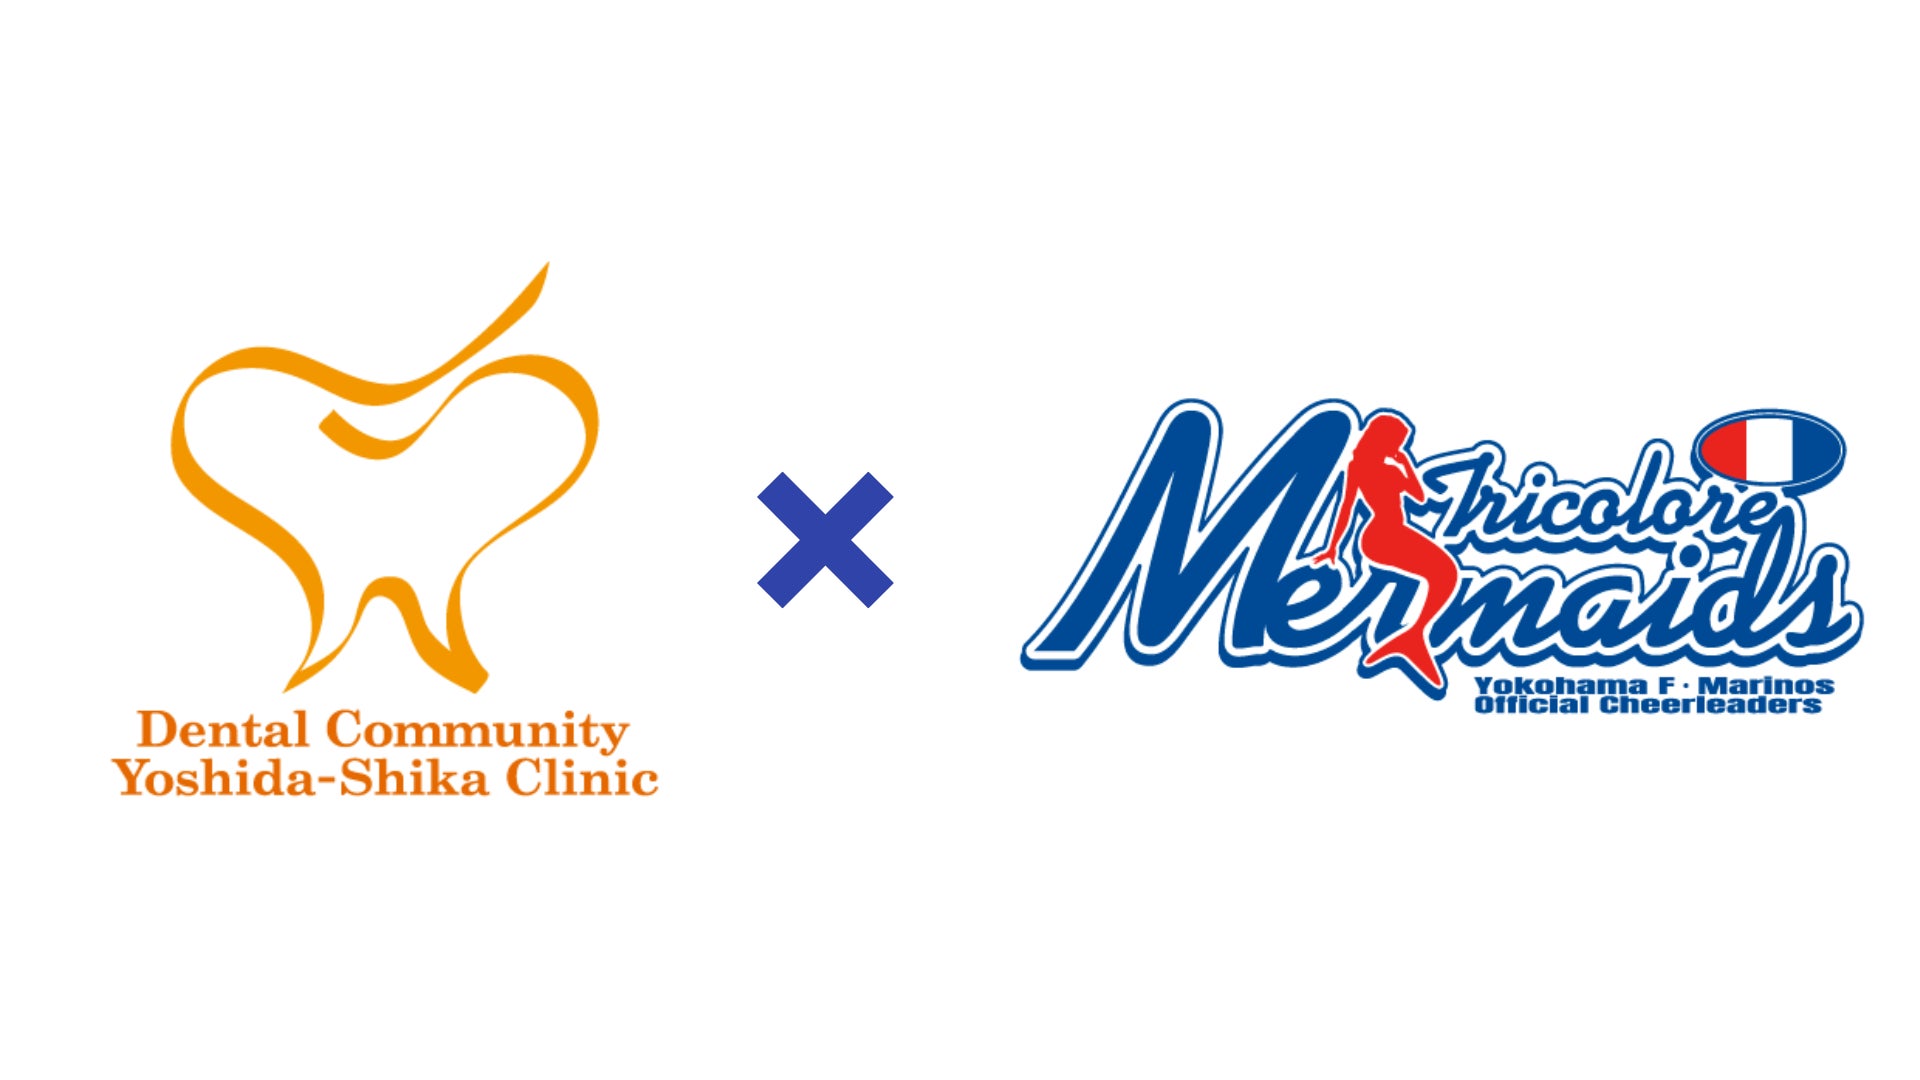 横浜F・マリノスオフィシャルチアリーダーズ Tricolore Mermaidsは、医療法人Dental CommunityとCorporate Partner契約を締結しましたのサブ画像1